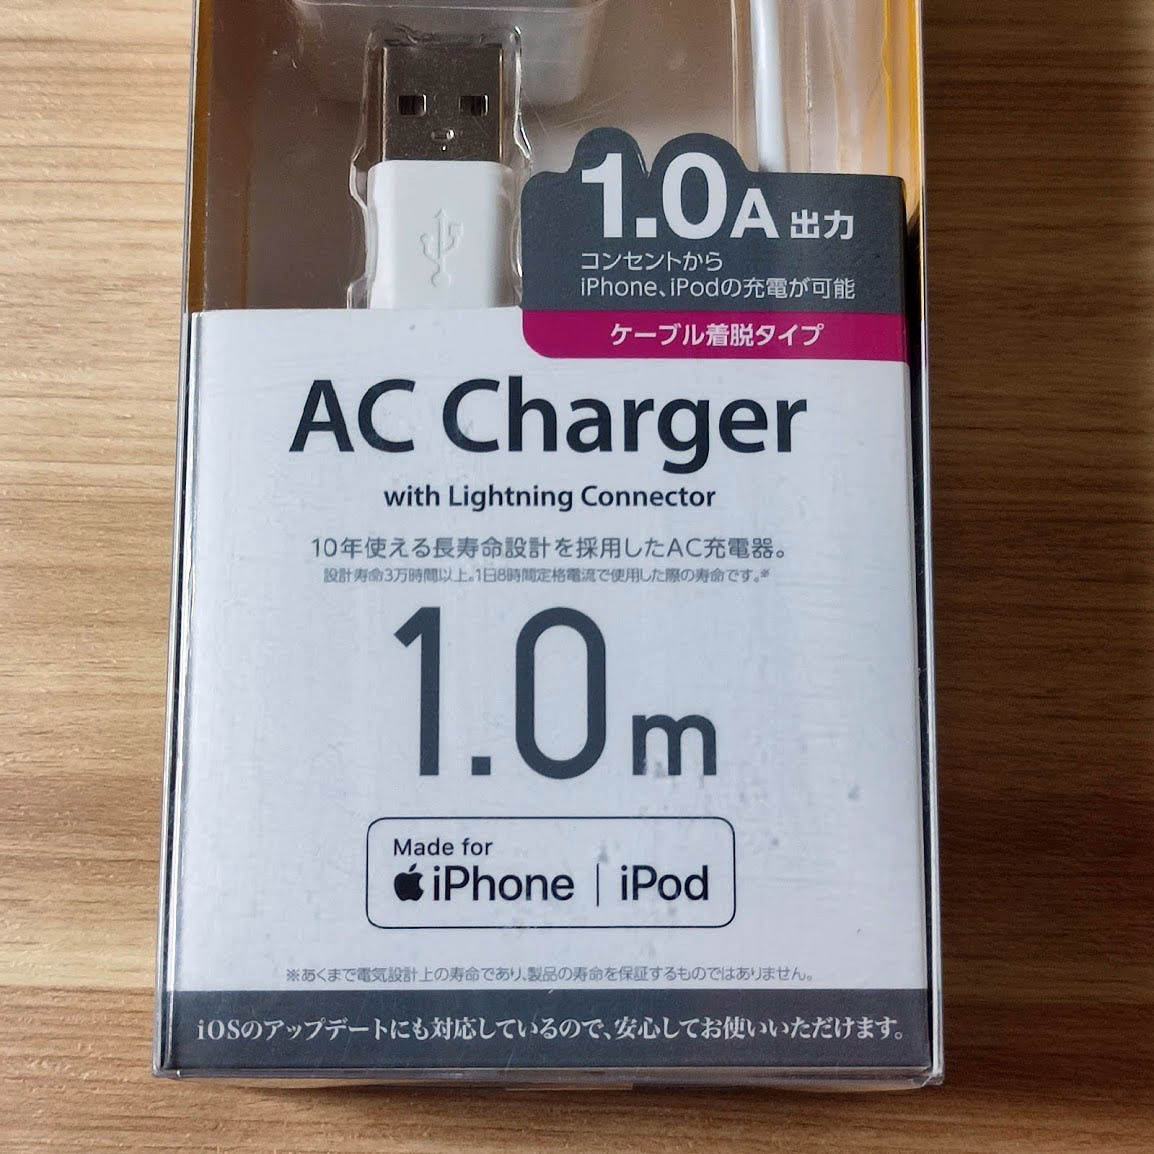 エレコム ライトニングケーブル ACアダプター セット MFi認証品 Apple公式認定品 Lightning USB充電器 1.0m 1.0A コンパクト 820 匿名